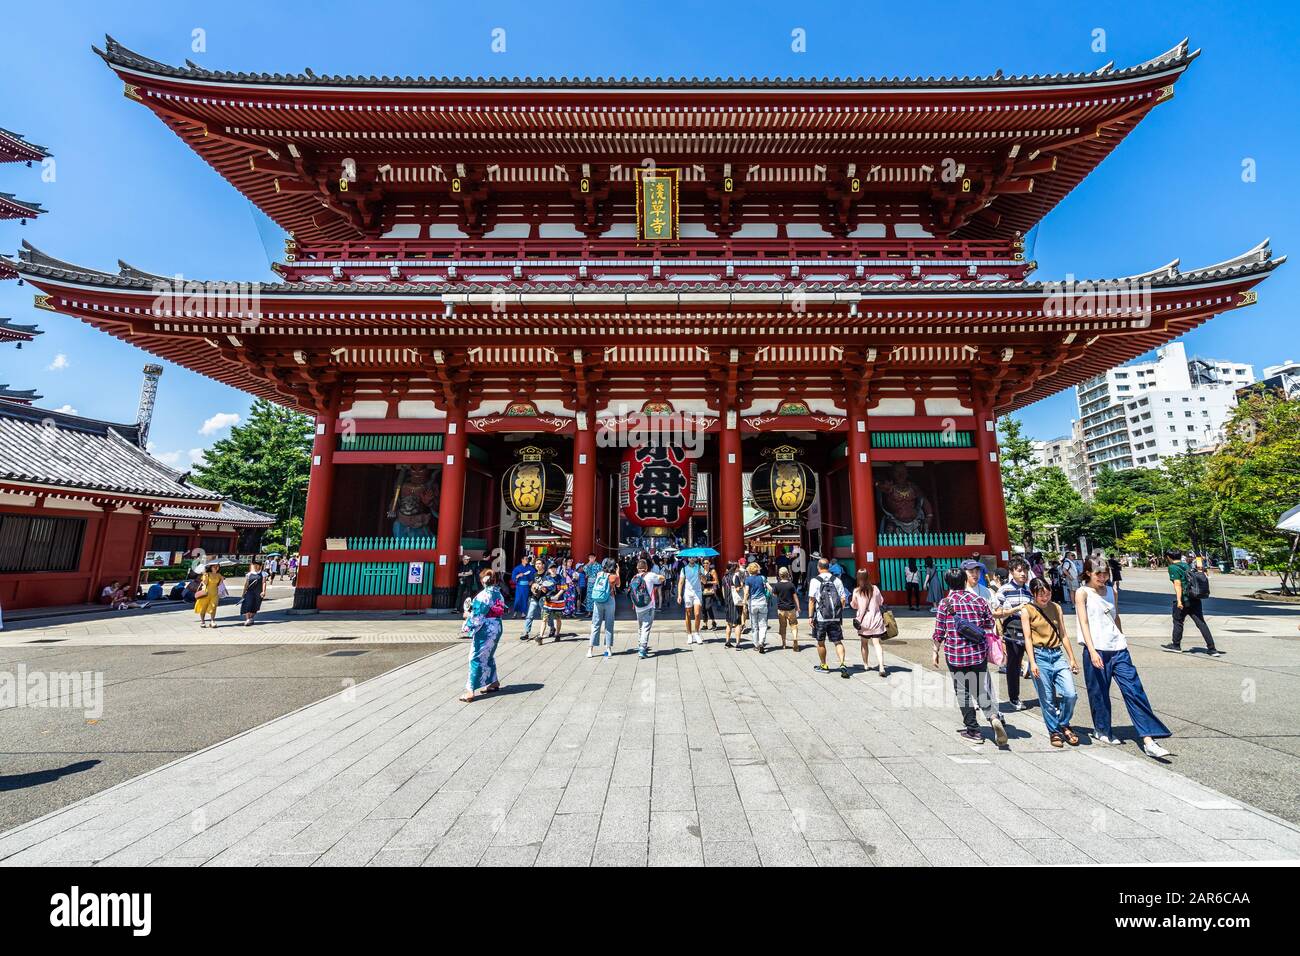 Entrée du temple Sensoji, situé dans le quartier de Tokyo Asakusa. Tokyo, Japon, Août 2019 Banque D'Images